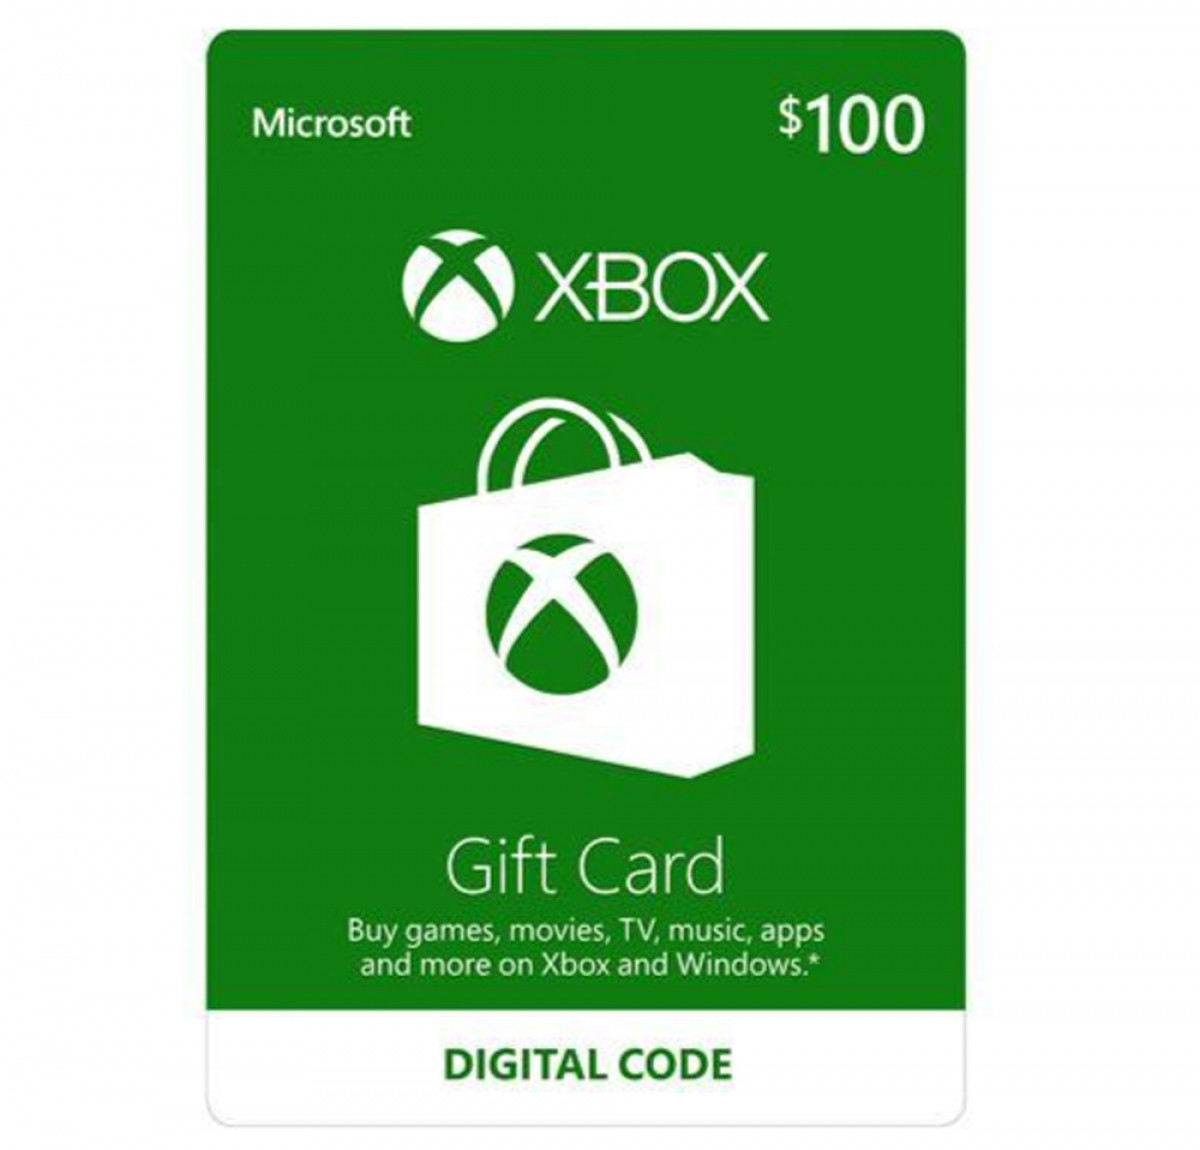 Thẻ Xbox gift card trị giá 100 USD đang được nhiều khách hàng ưa chuộng để làm quà tặng dịp GIáng Sinh. Thẻ có thể dùng để tải nhạc, xem video và chơi games...